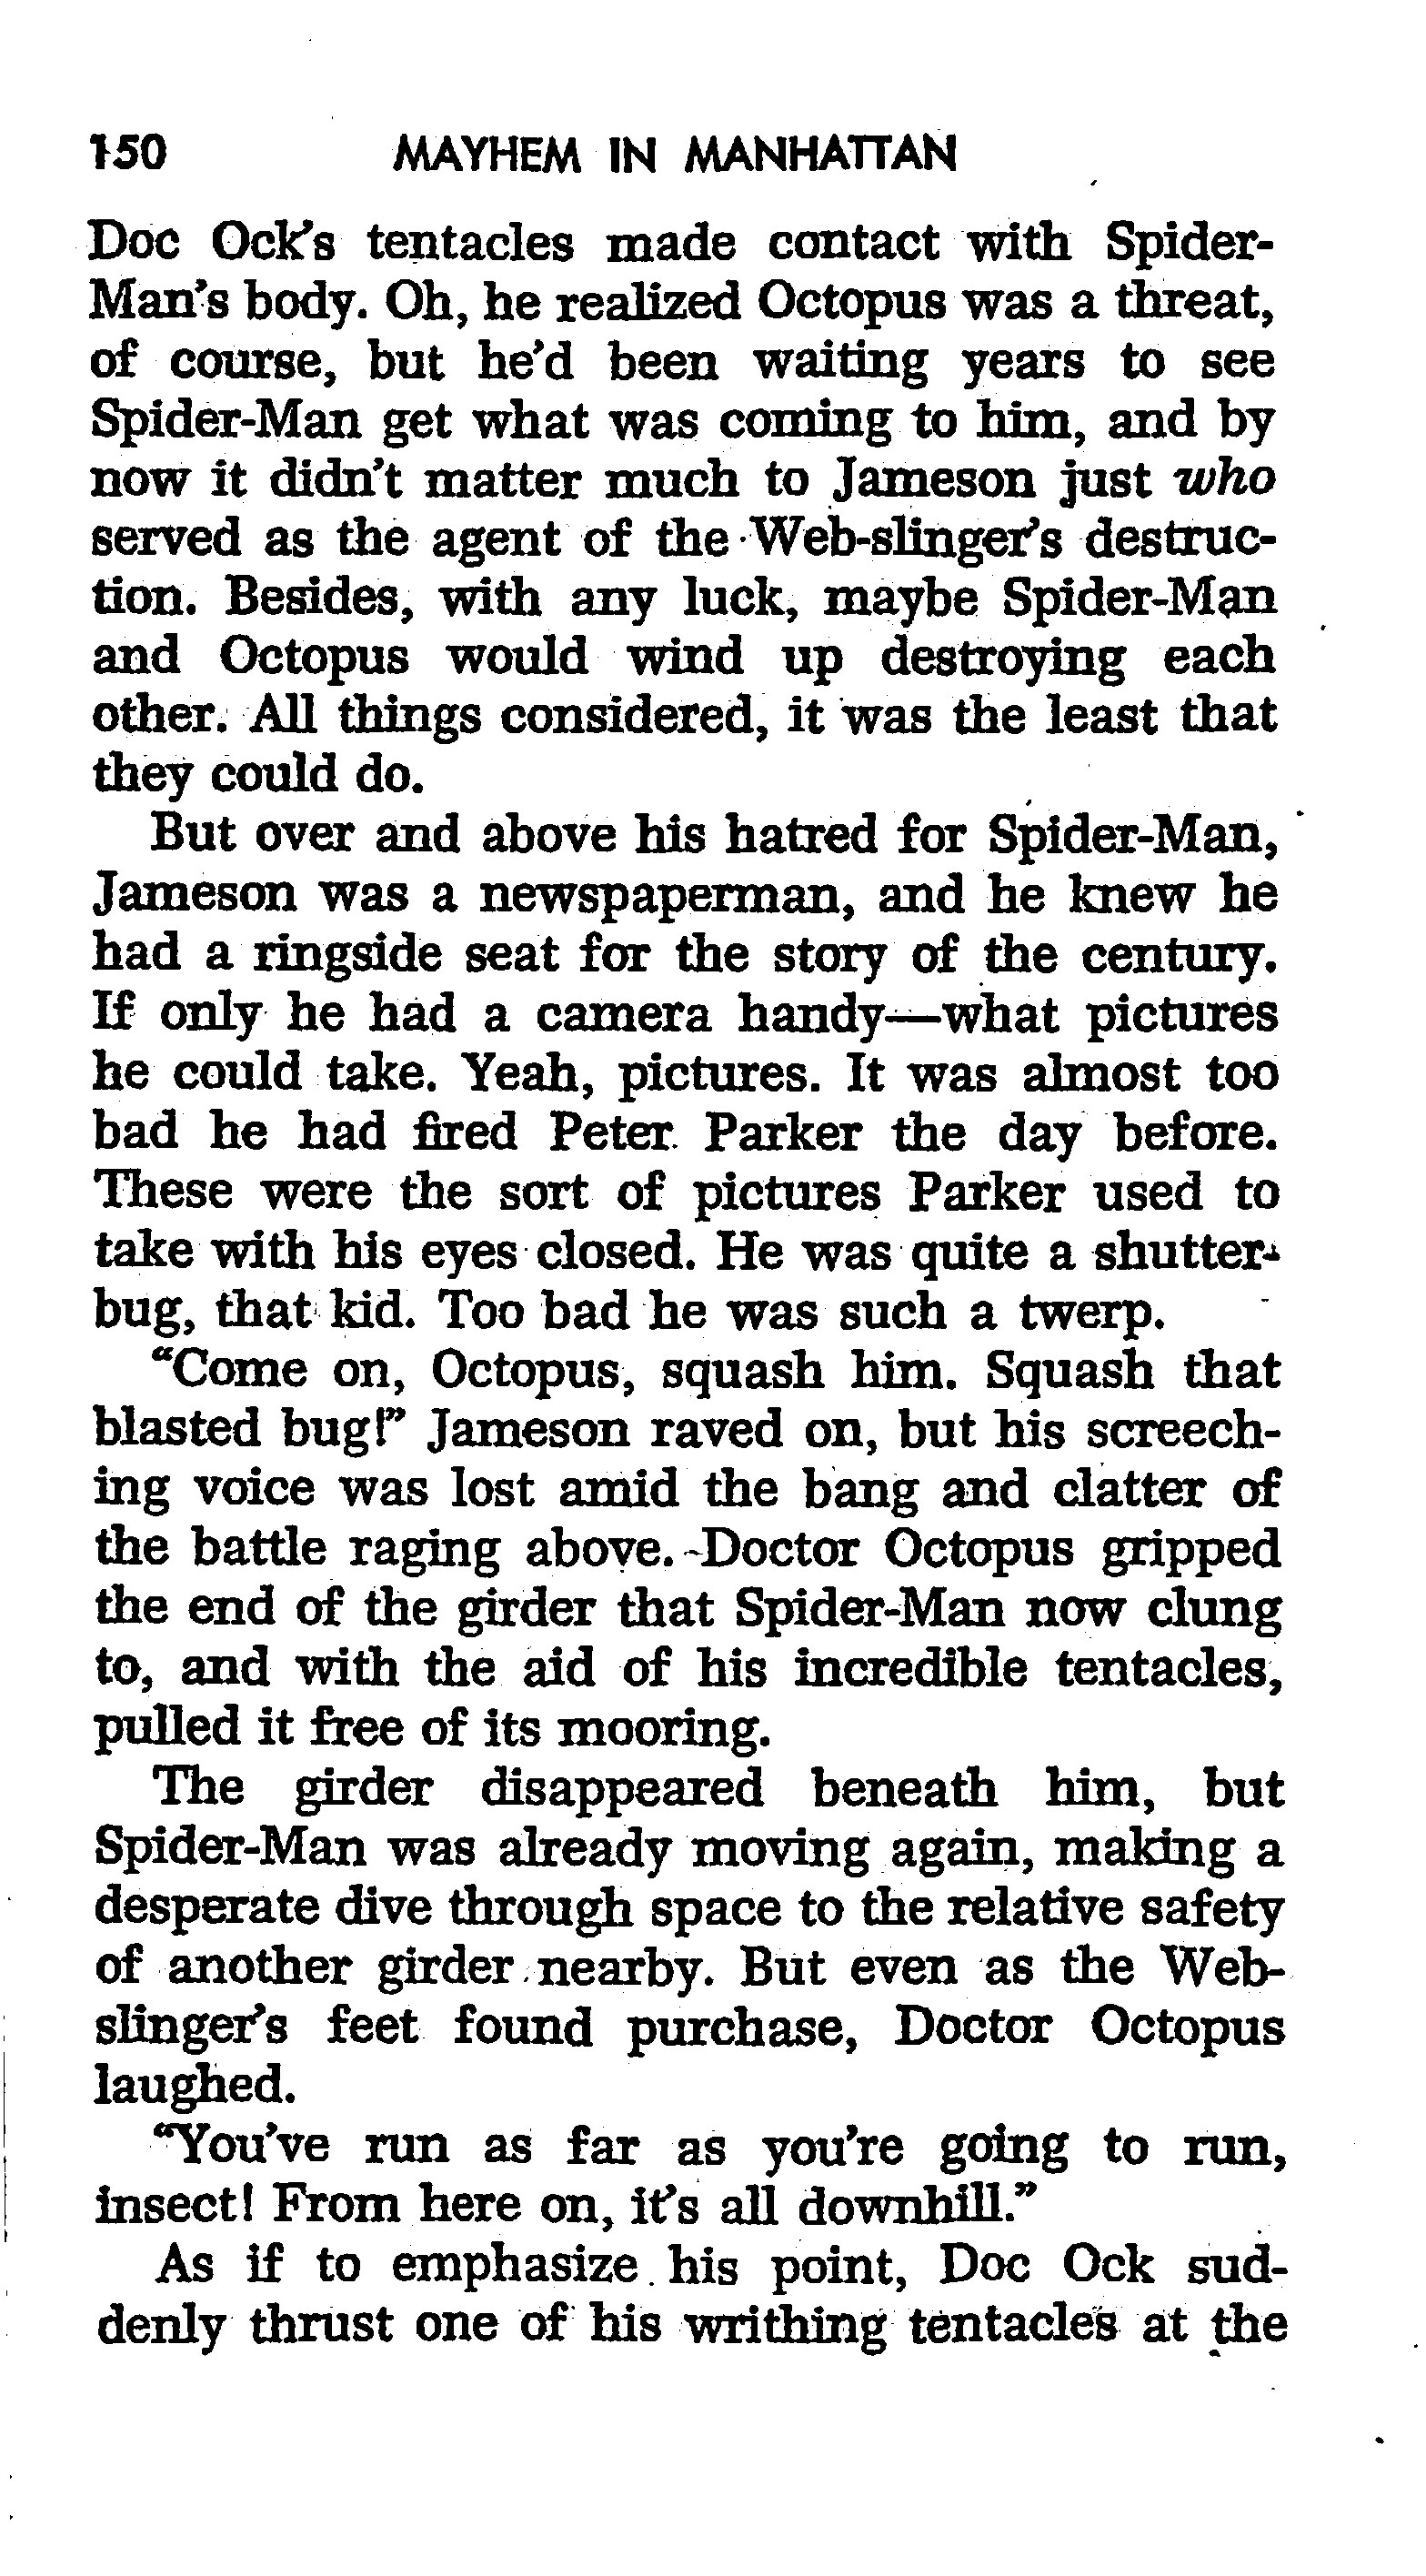 Read online The Amazing Spider-Man: Mayhem in Manhattan comic -  Issue # TPB (Part 2) - 52